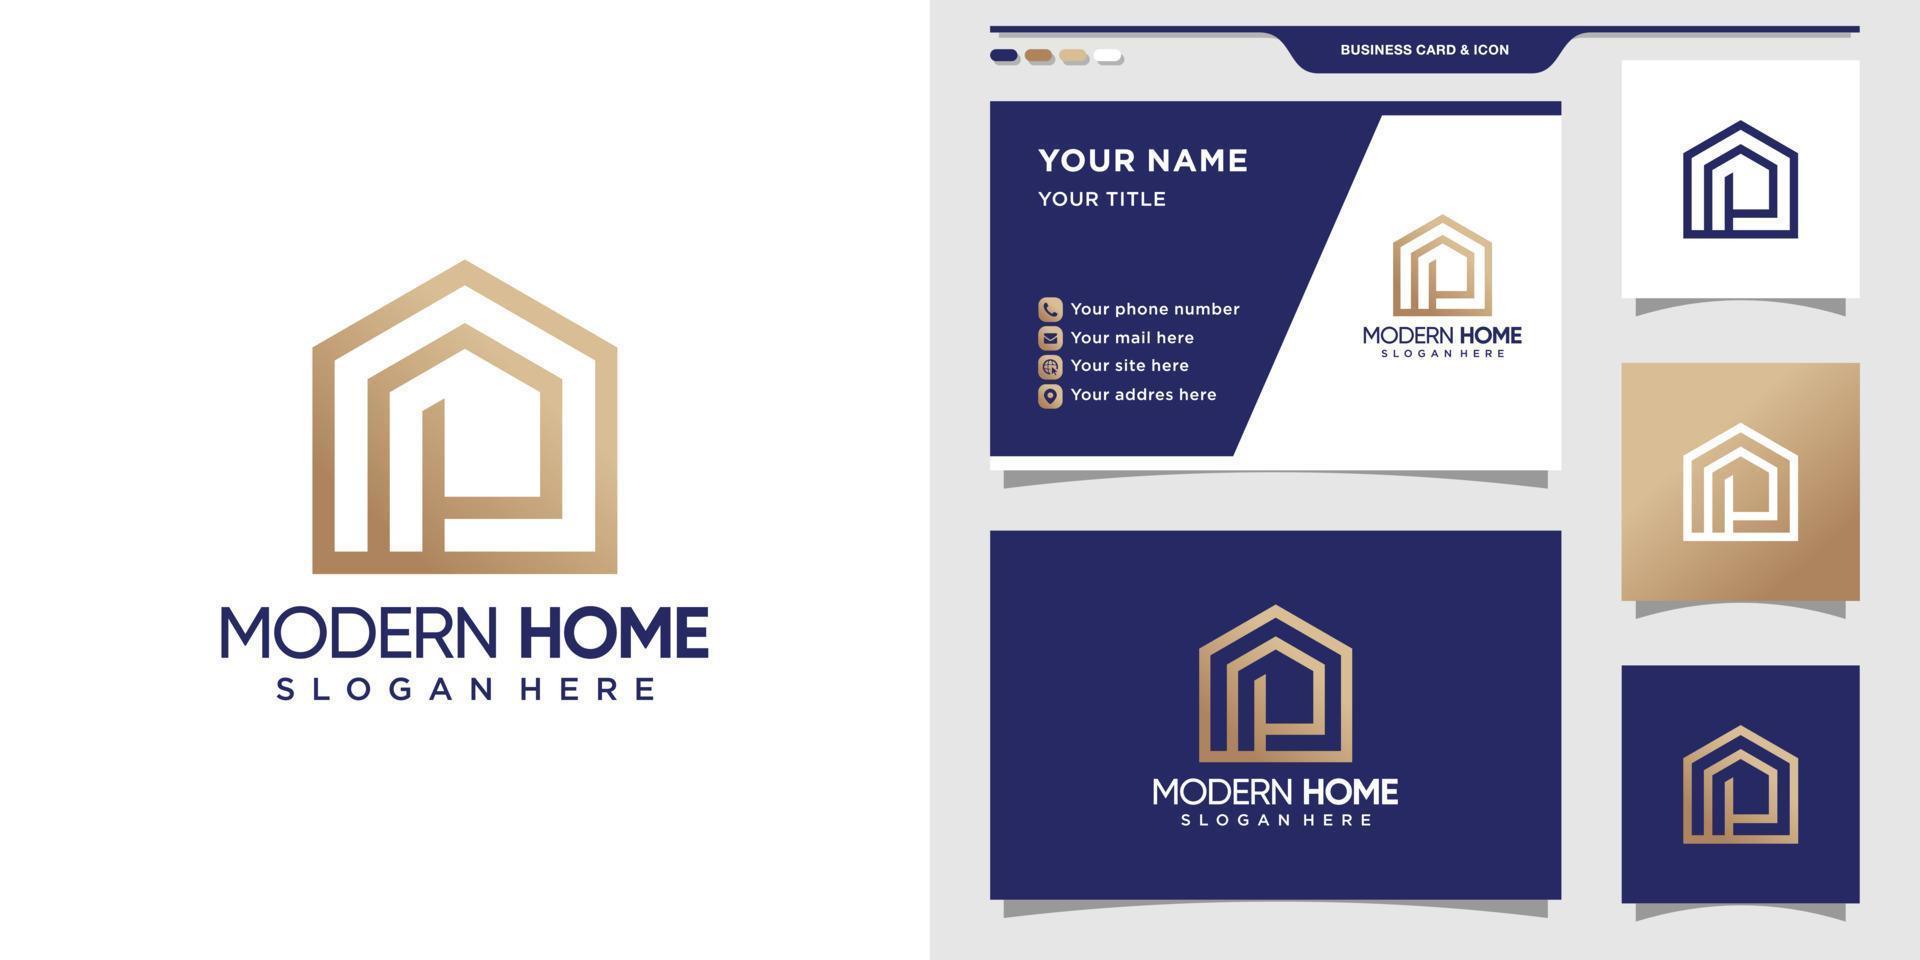 minimalistisches hauslogo mit anfangsbuchstabe p. modernes Home-Logo und Visitenkarten-Design. Premium-Vektor vektor